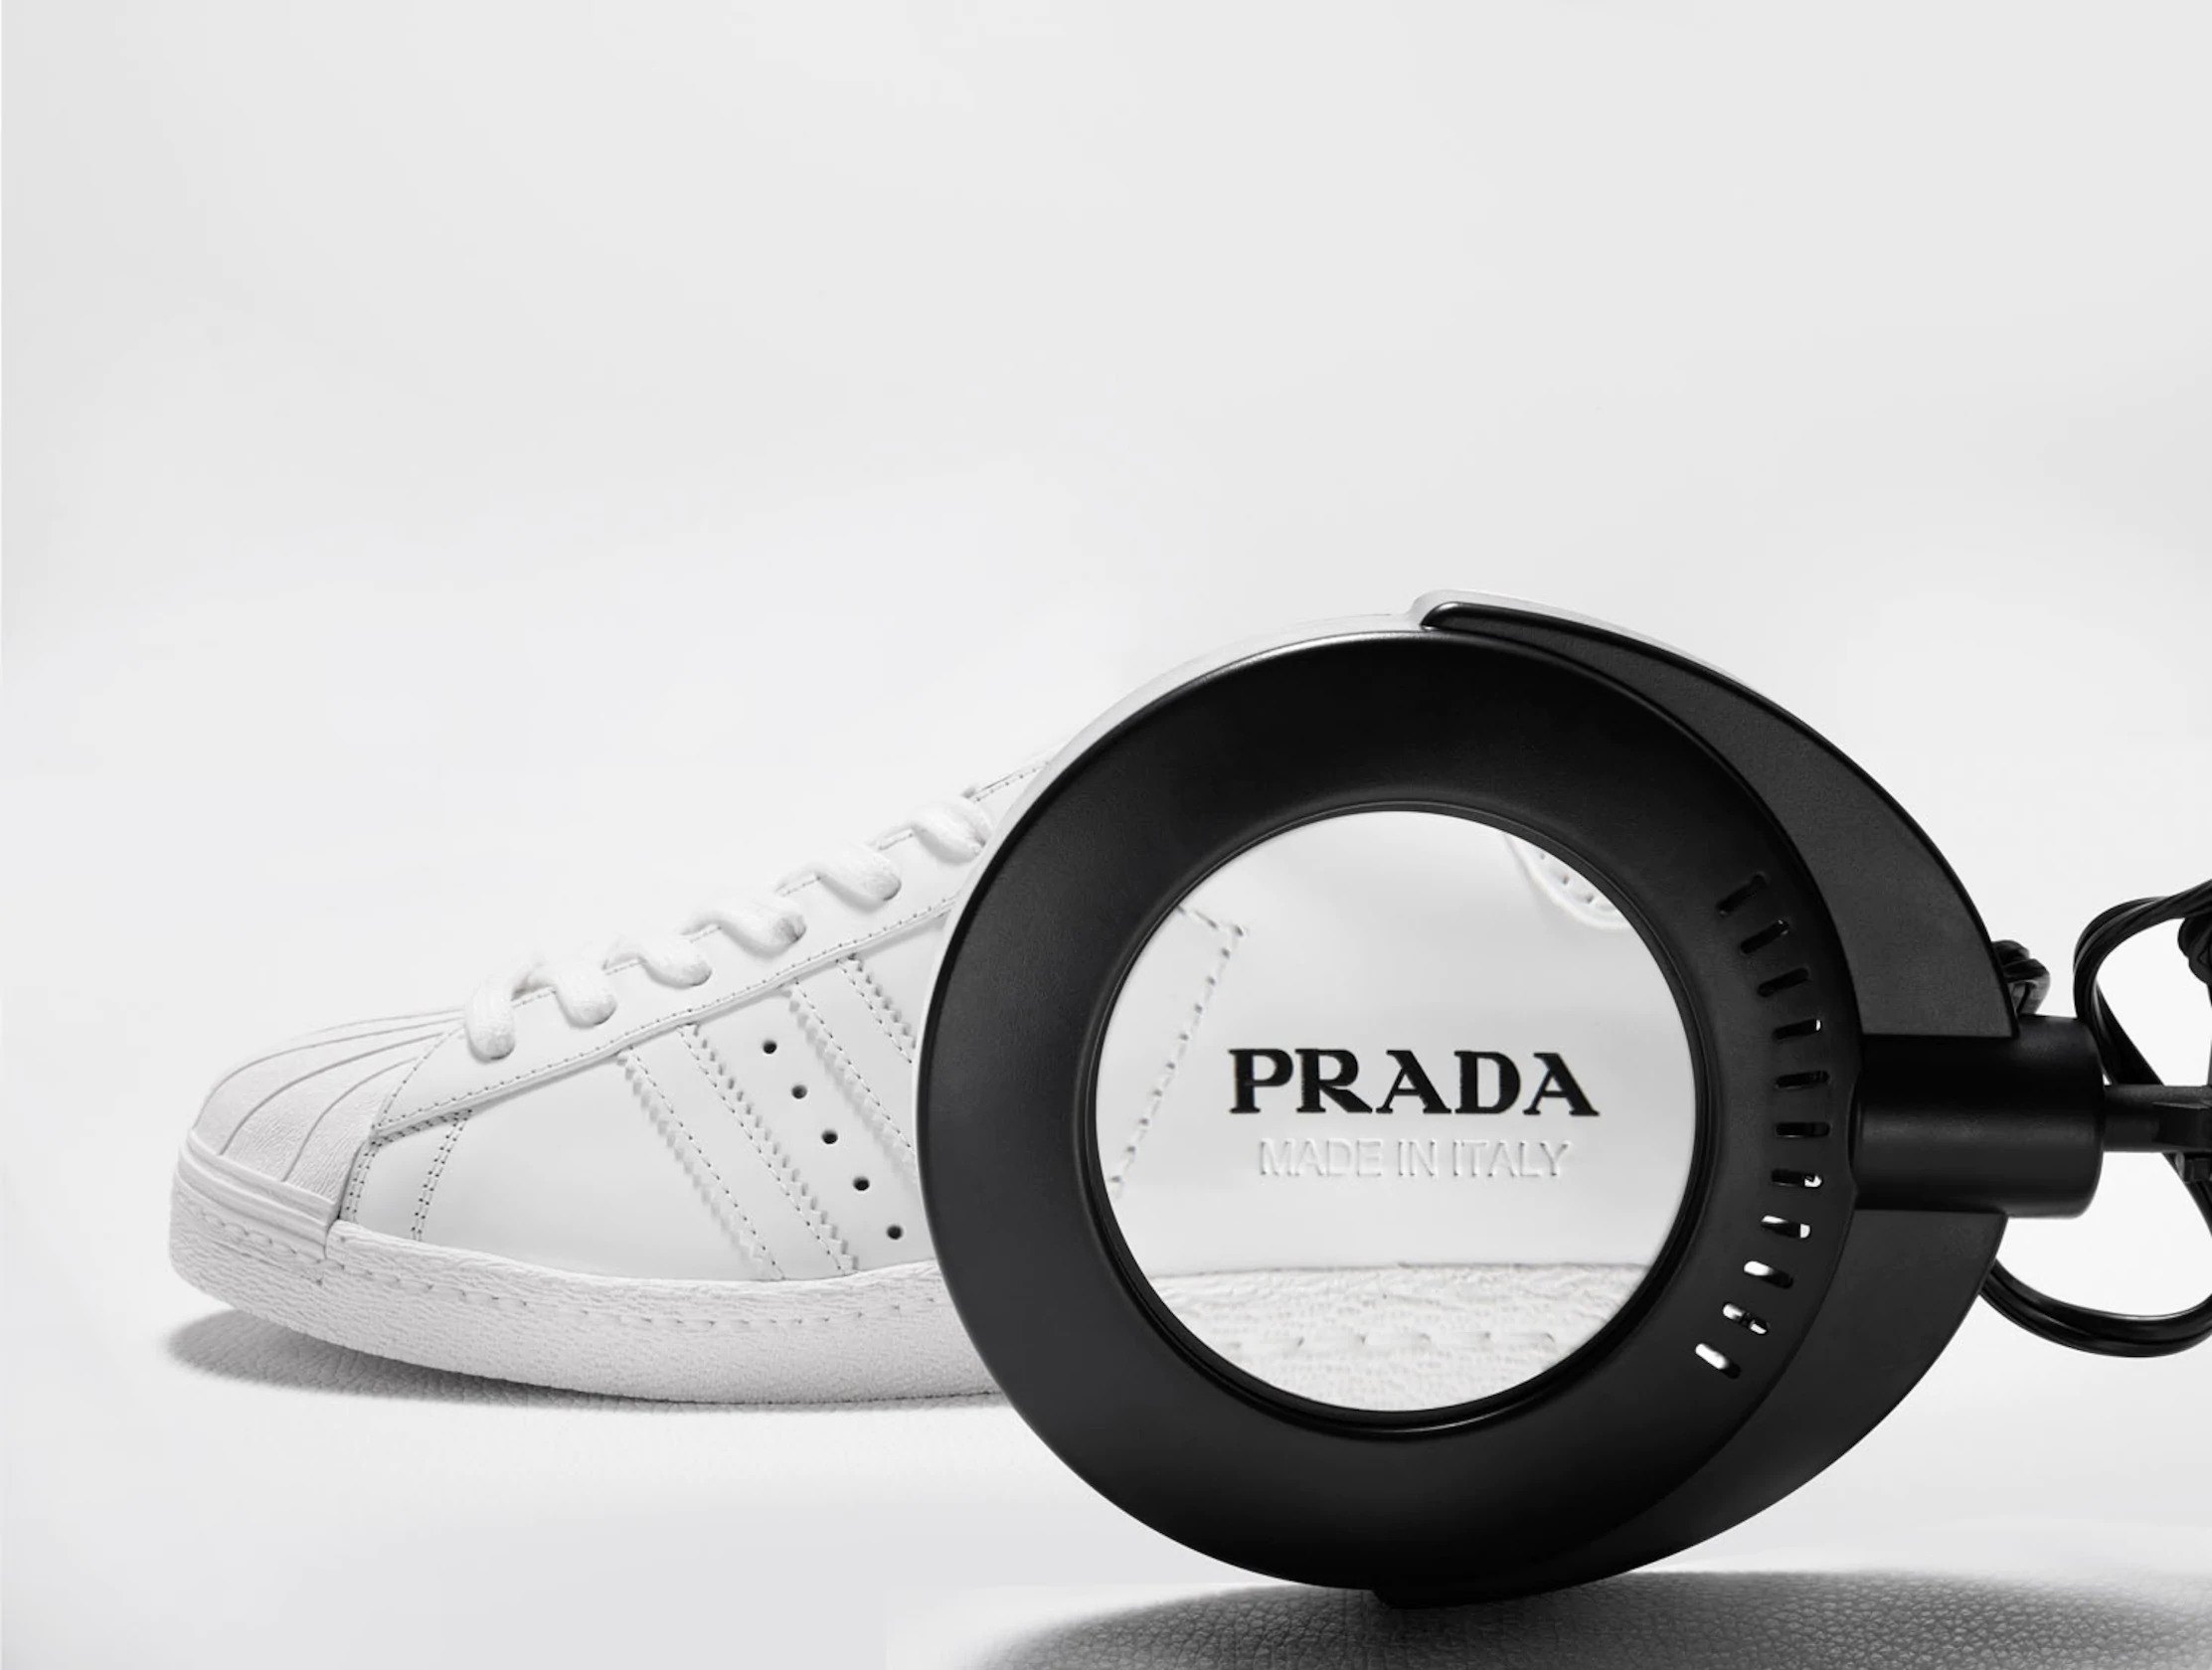 Prada lanza su primera colaboración edición limitada con Adidas